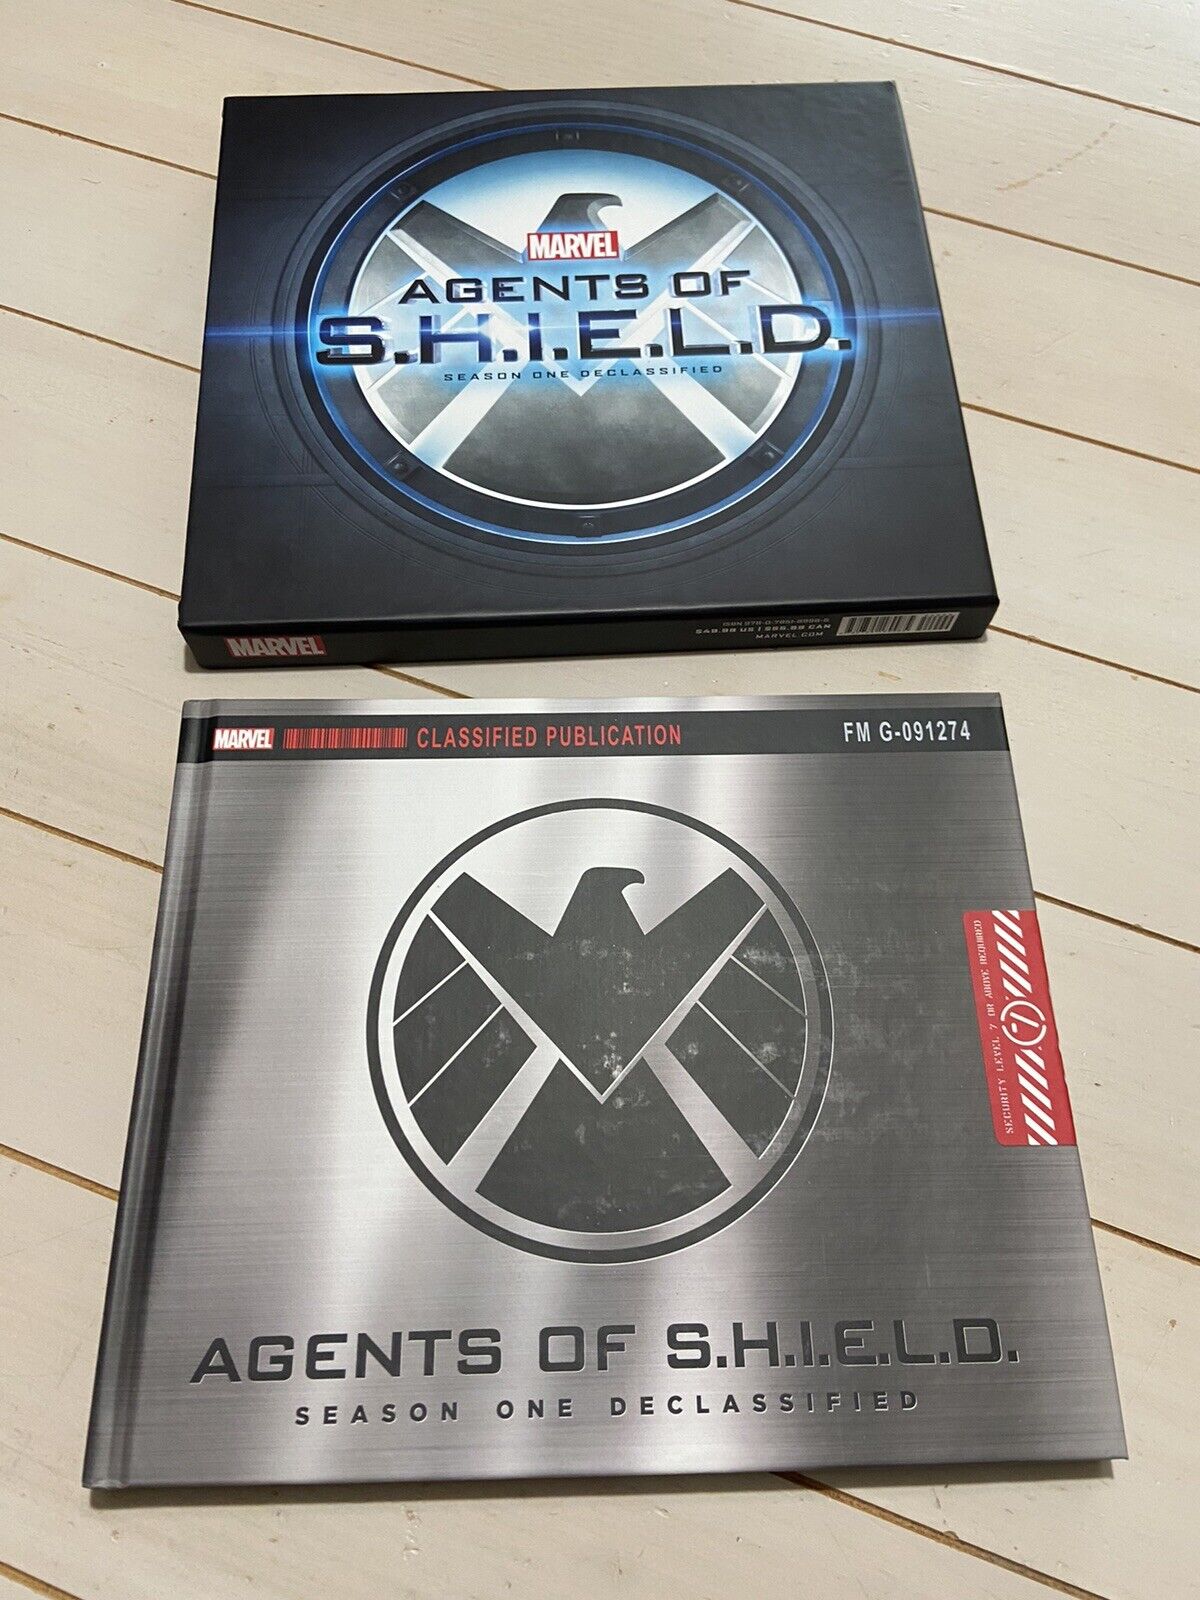 MARVEL - Agents of Shield - Season One Declassified